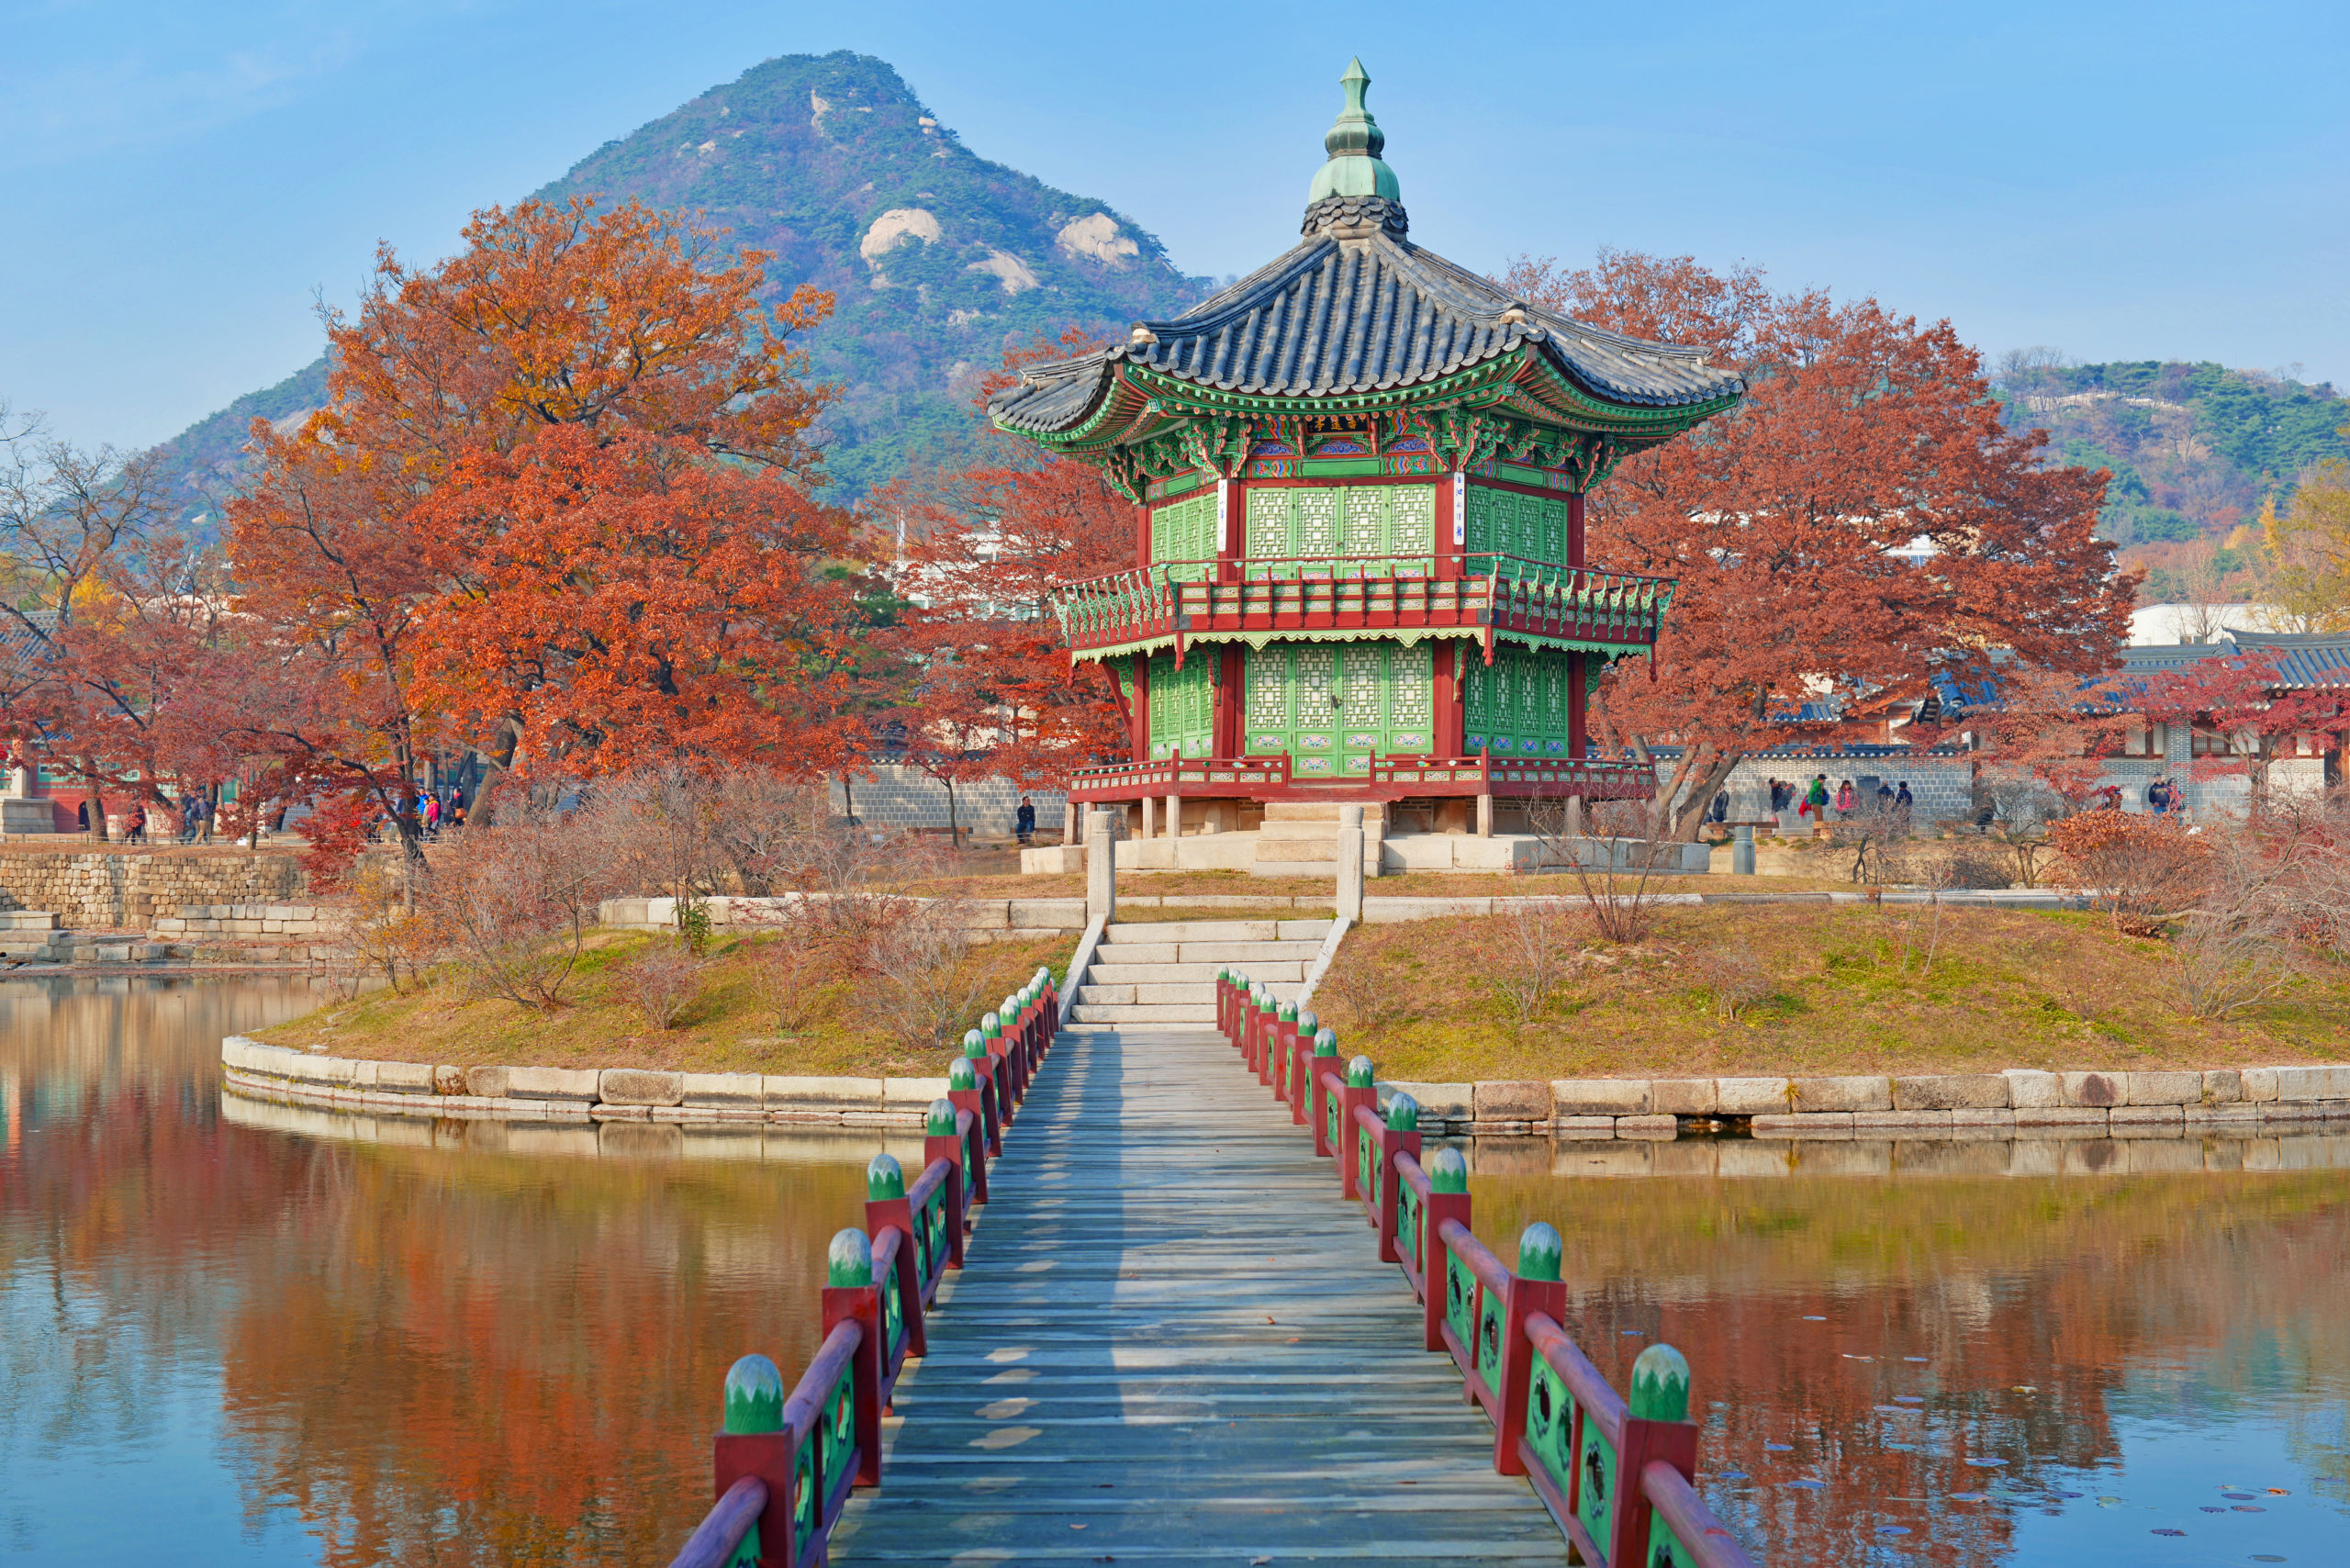 Vacanza lavoro in Corea del Sud come ottenere il visto 